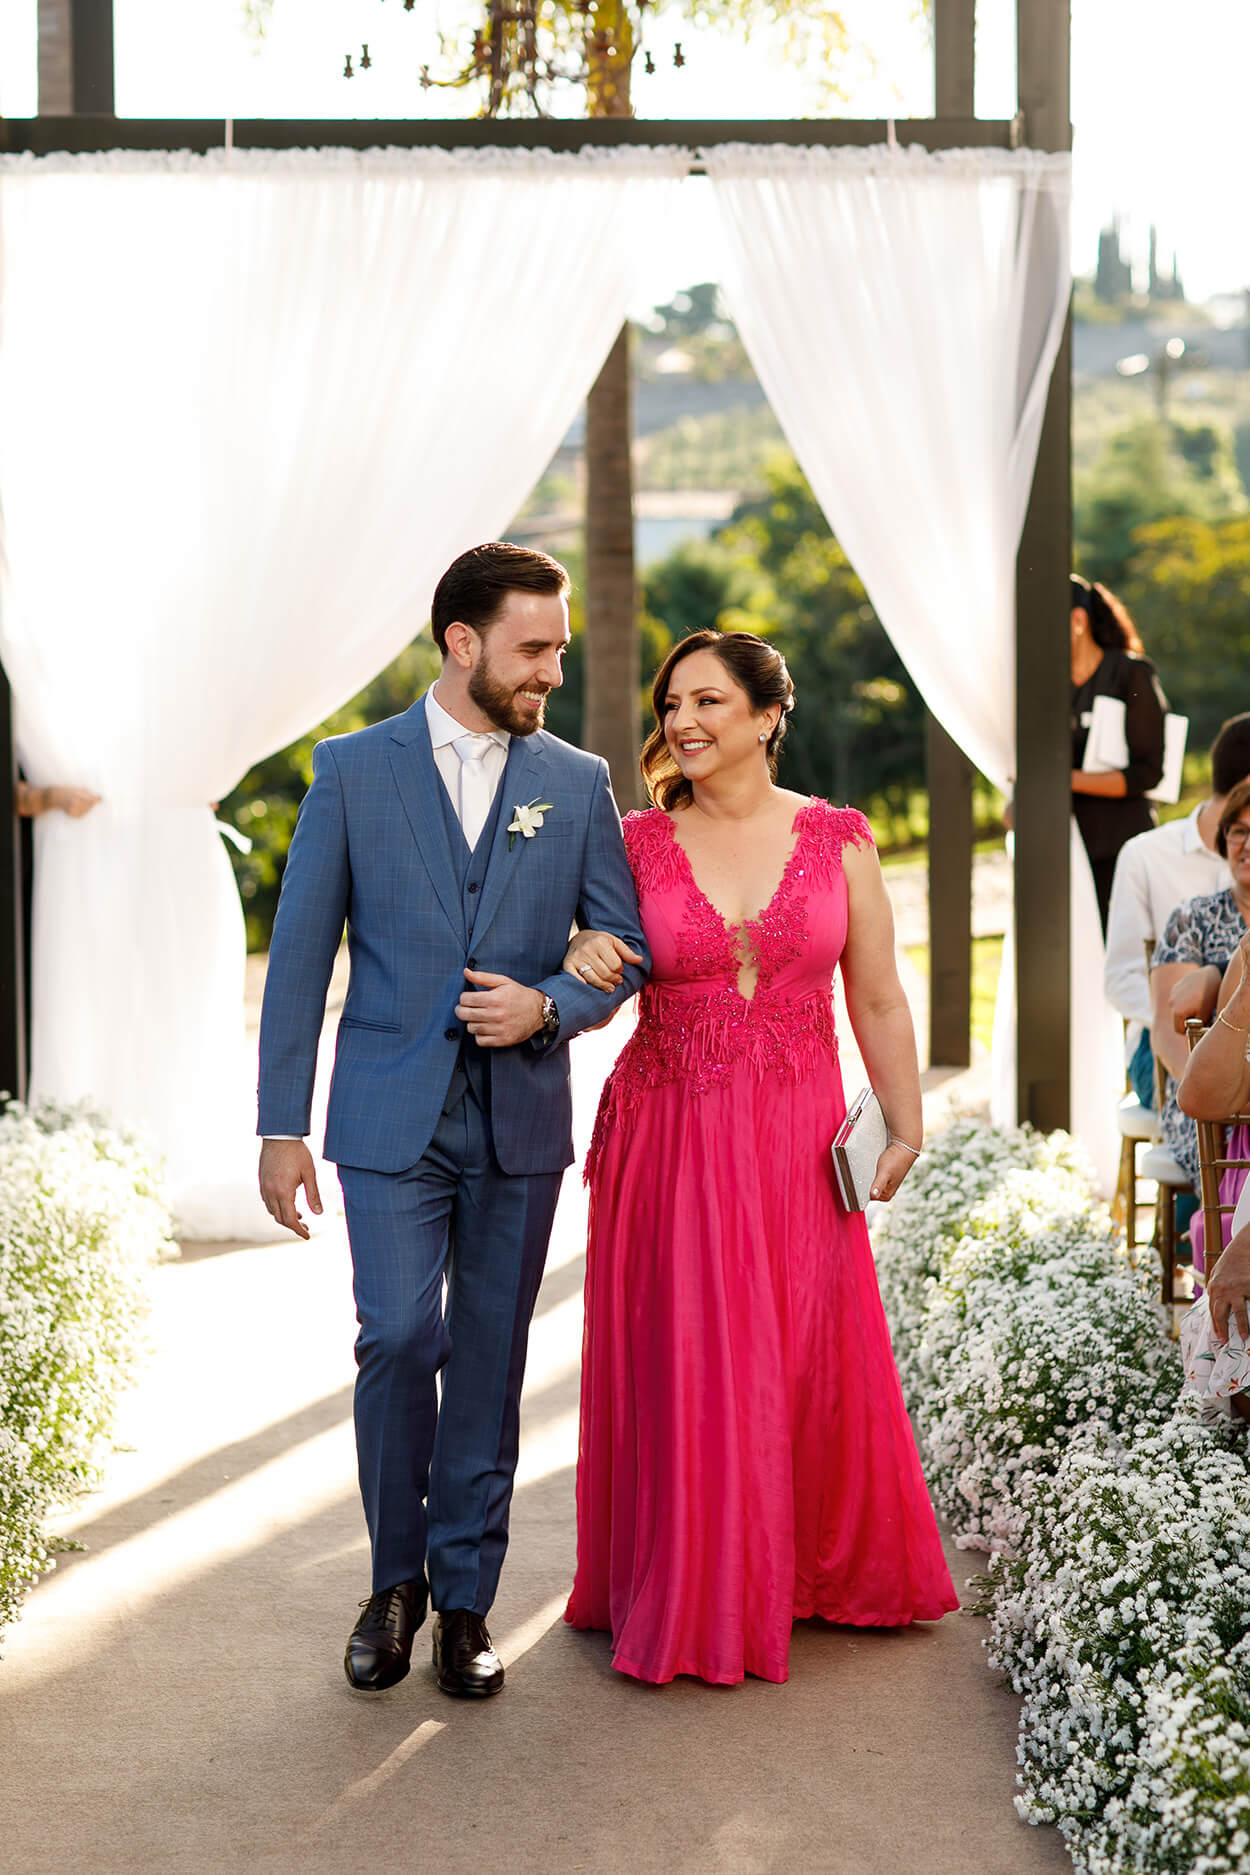 entrada do noivo com terno azul e gravata branca ao lado da mãe com vestido longo e pink